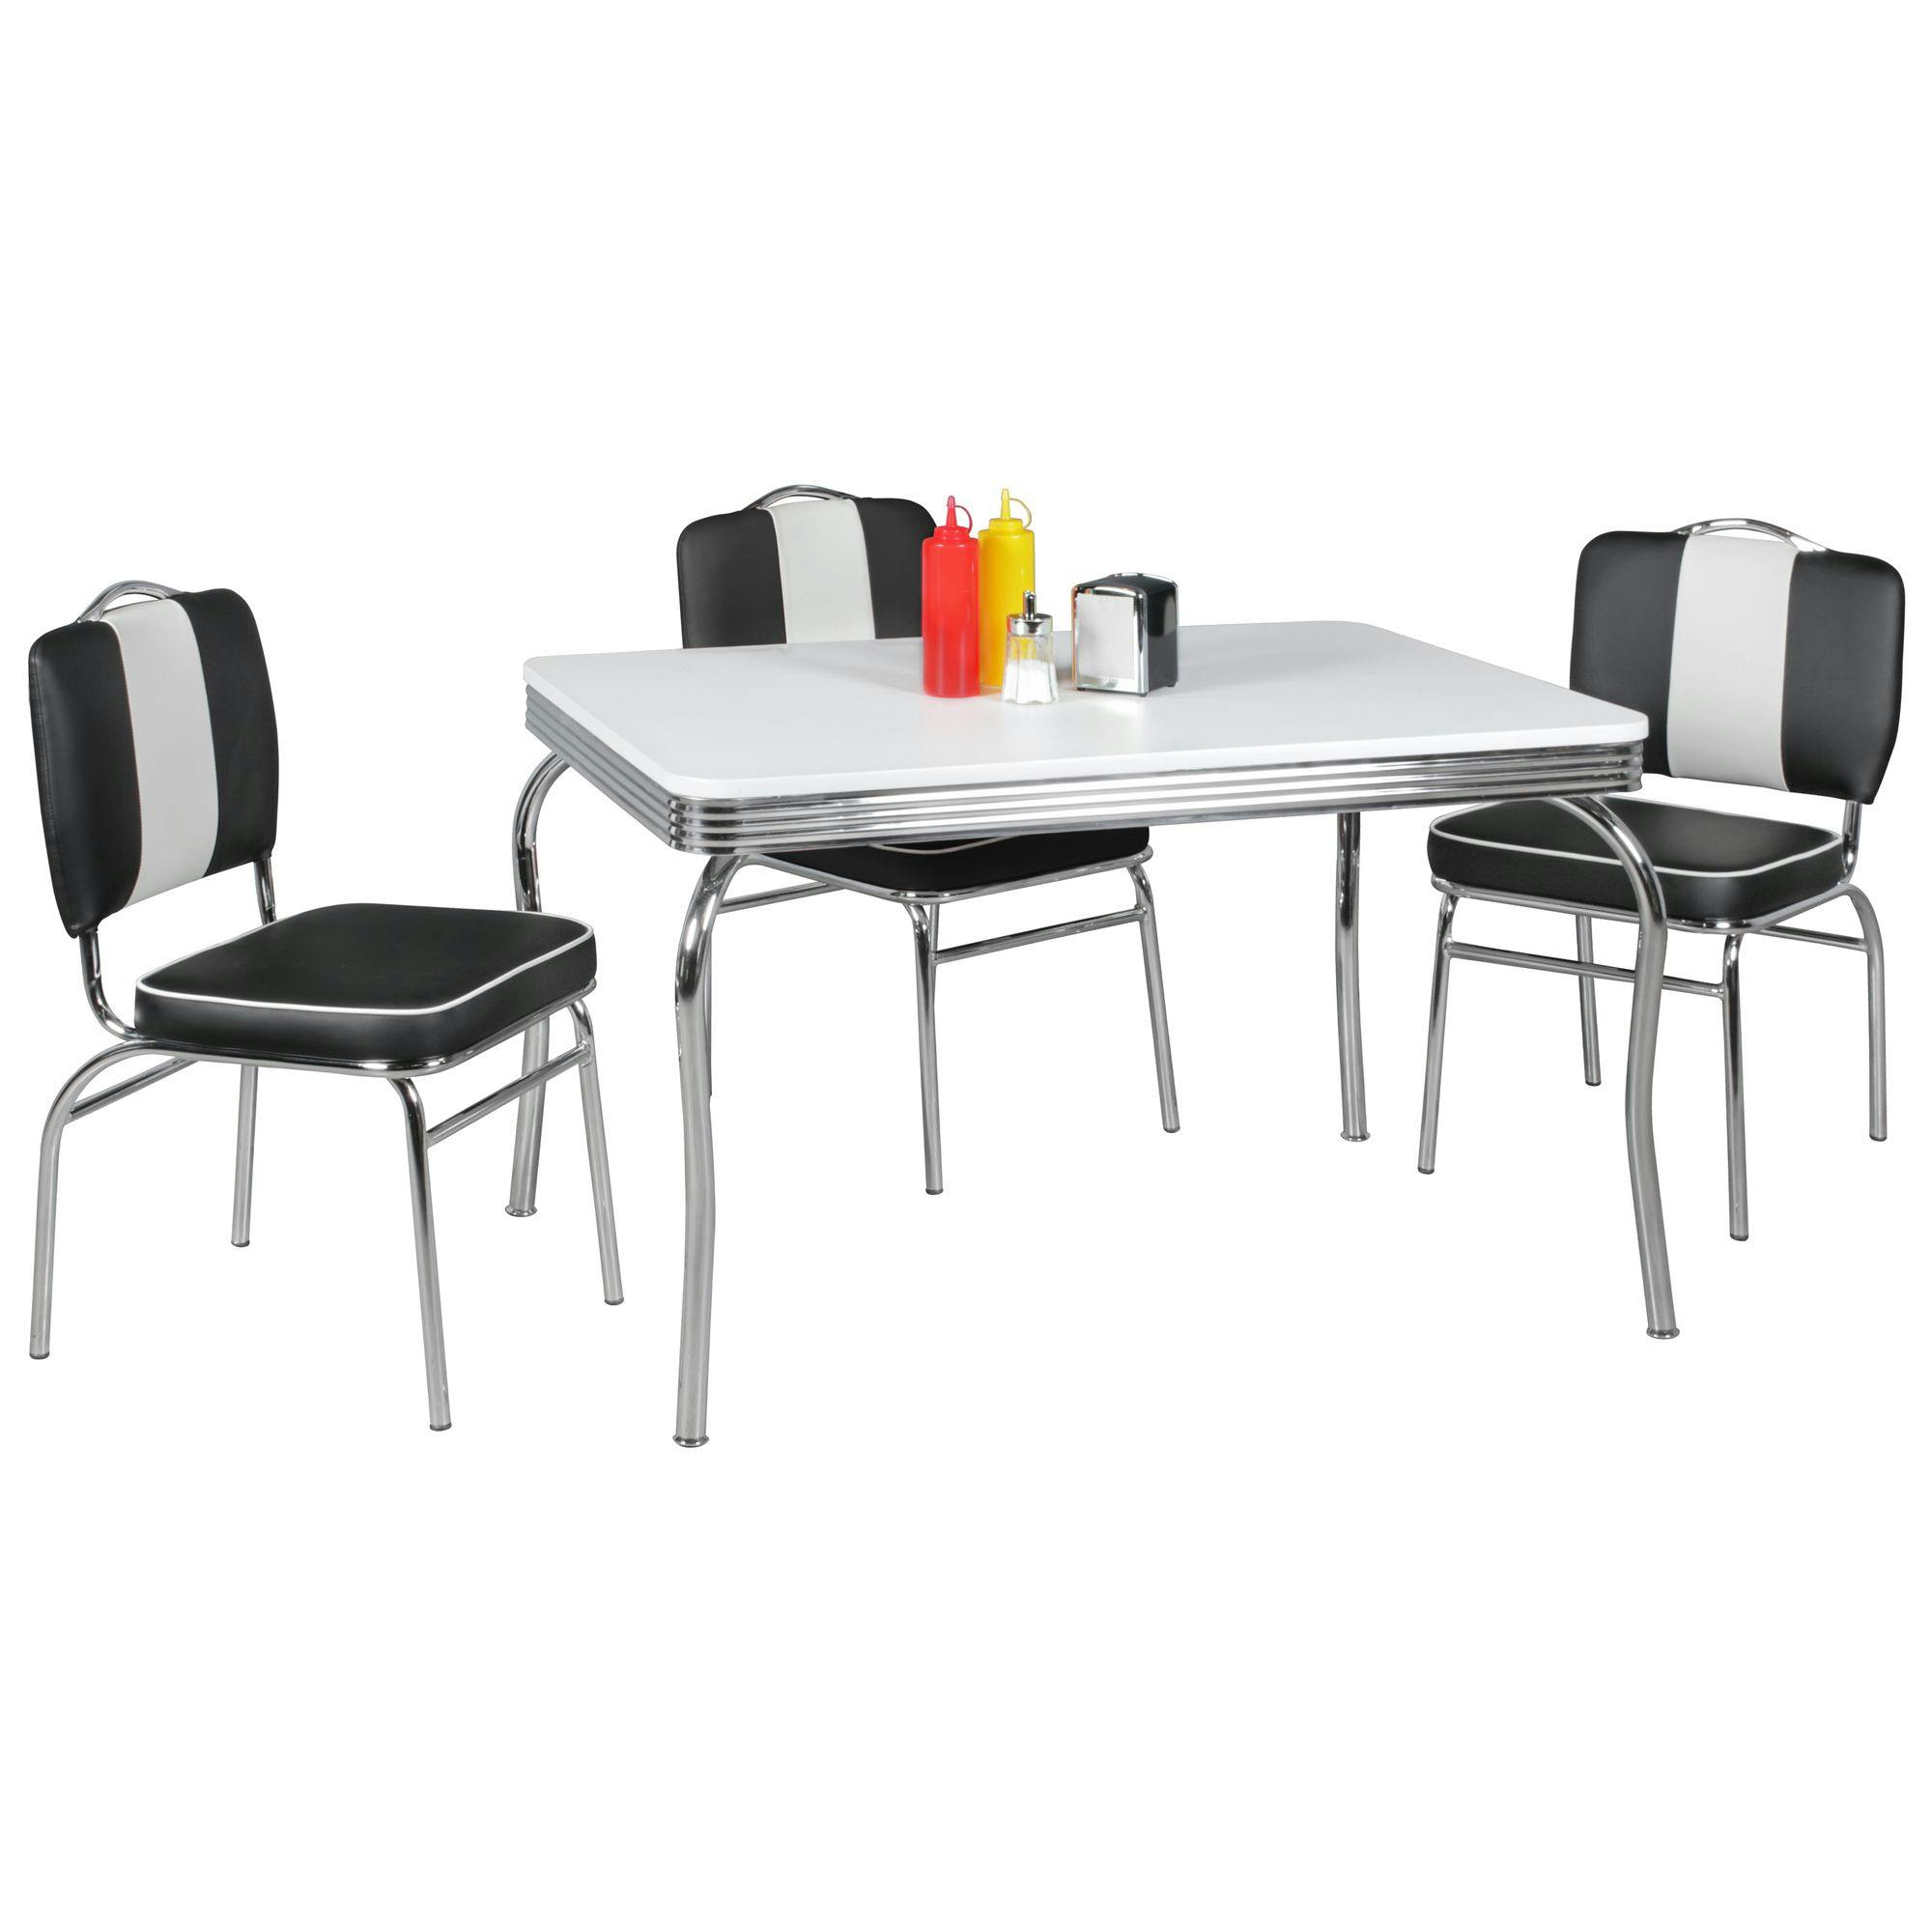 American Diner Esstisch 80 x 80 cm Weiß Design Retro US Bistrotisch Tisch Möbel 